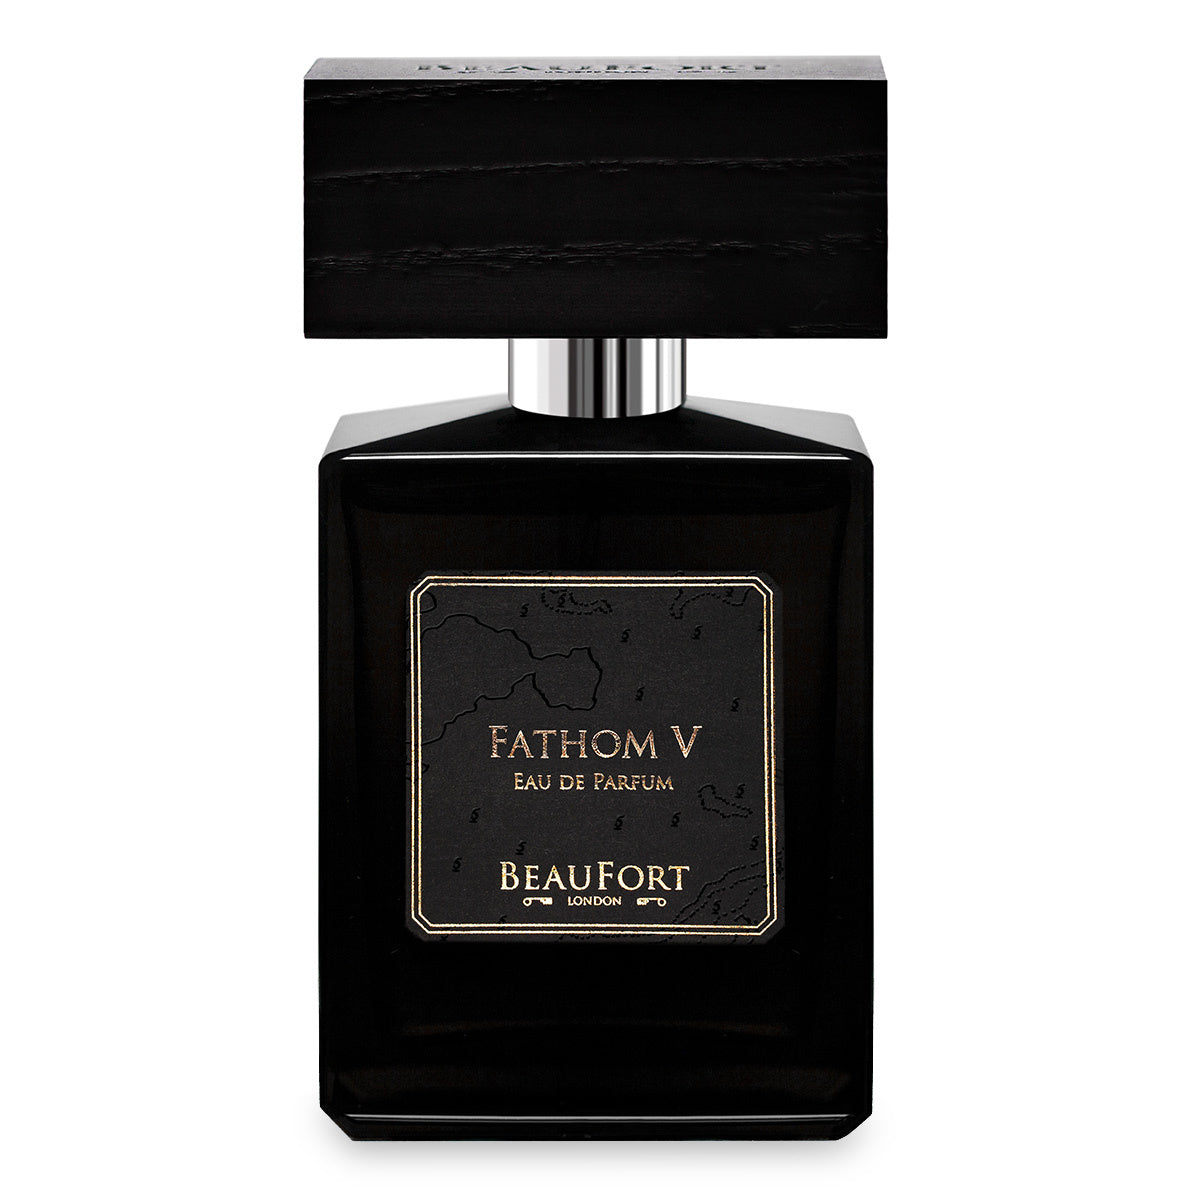 Primary image of Fathom V Eau de Parfum